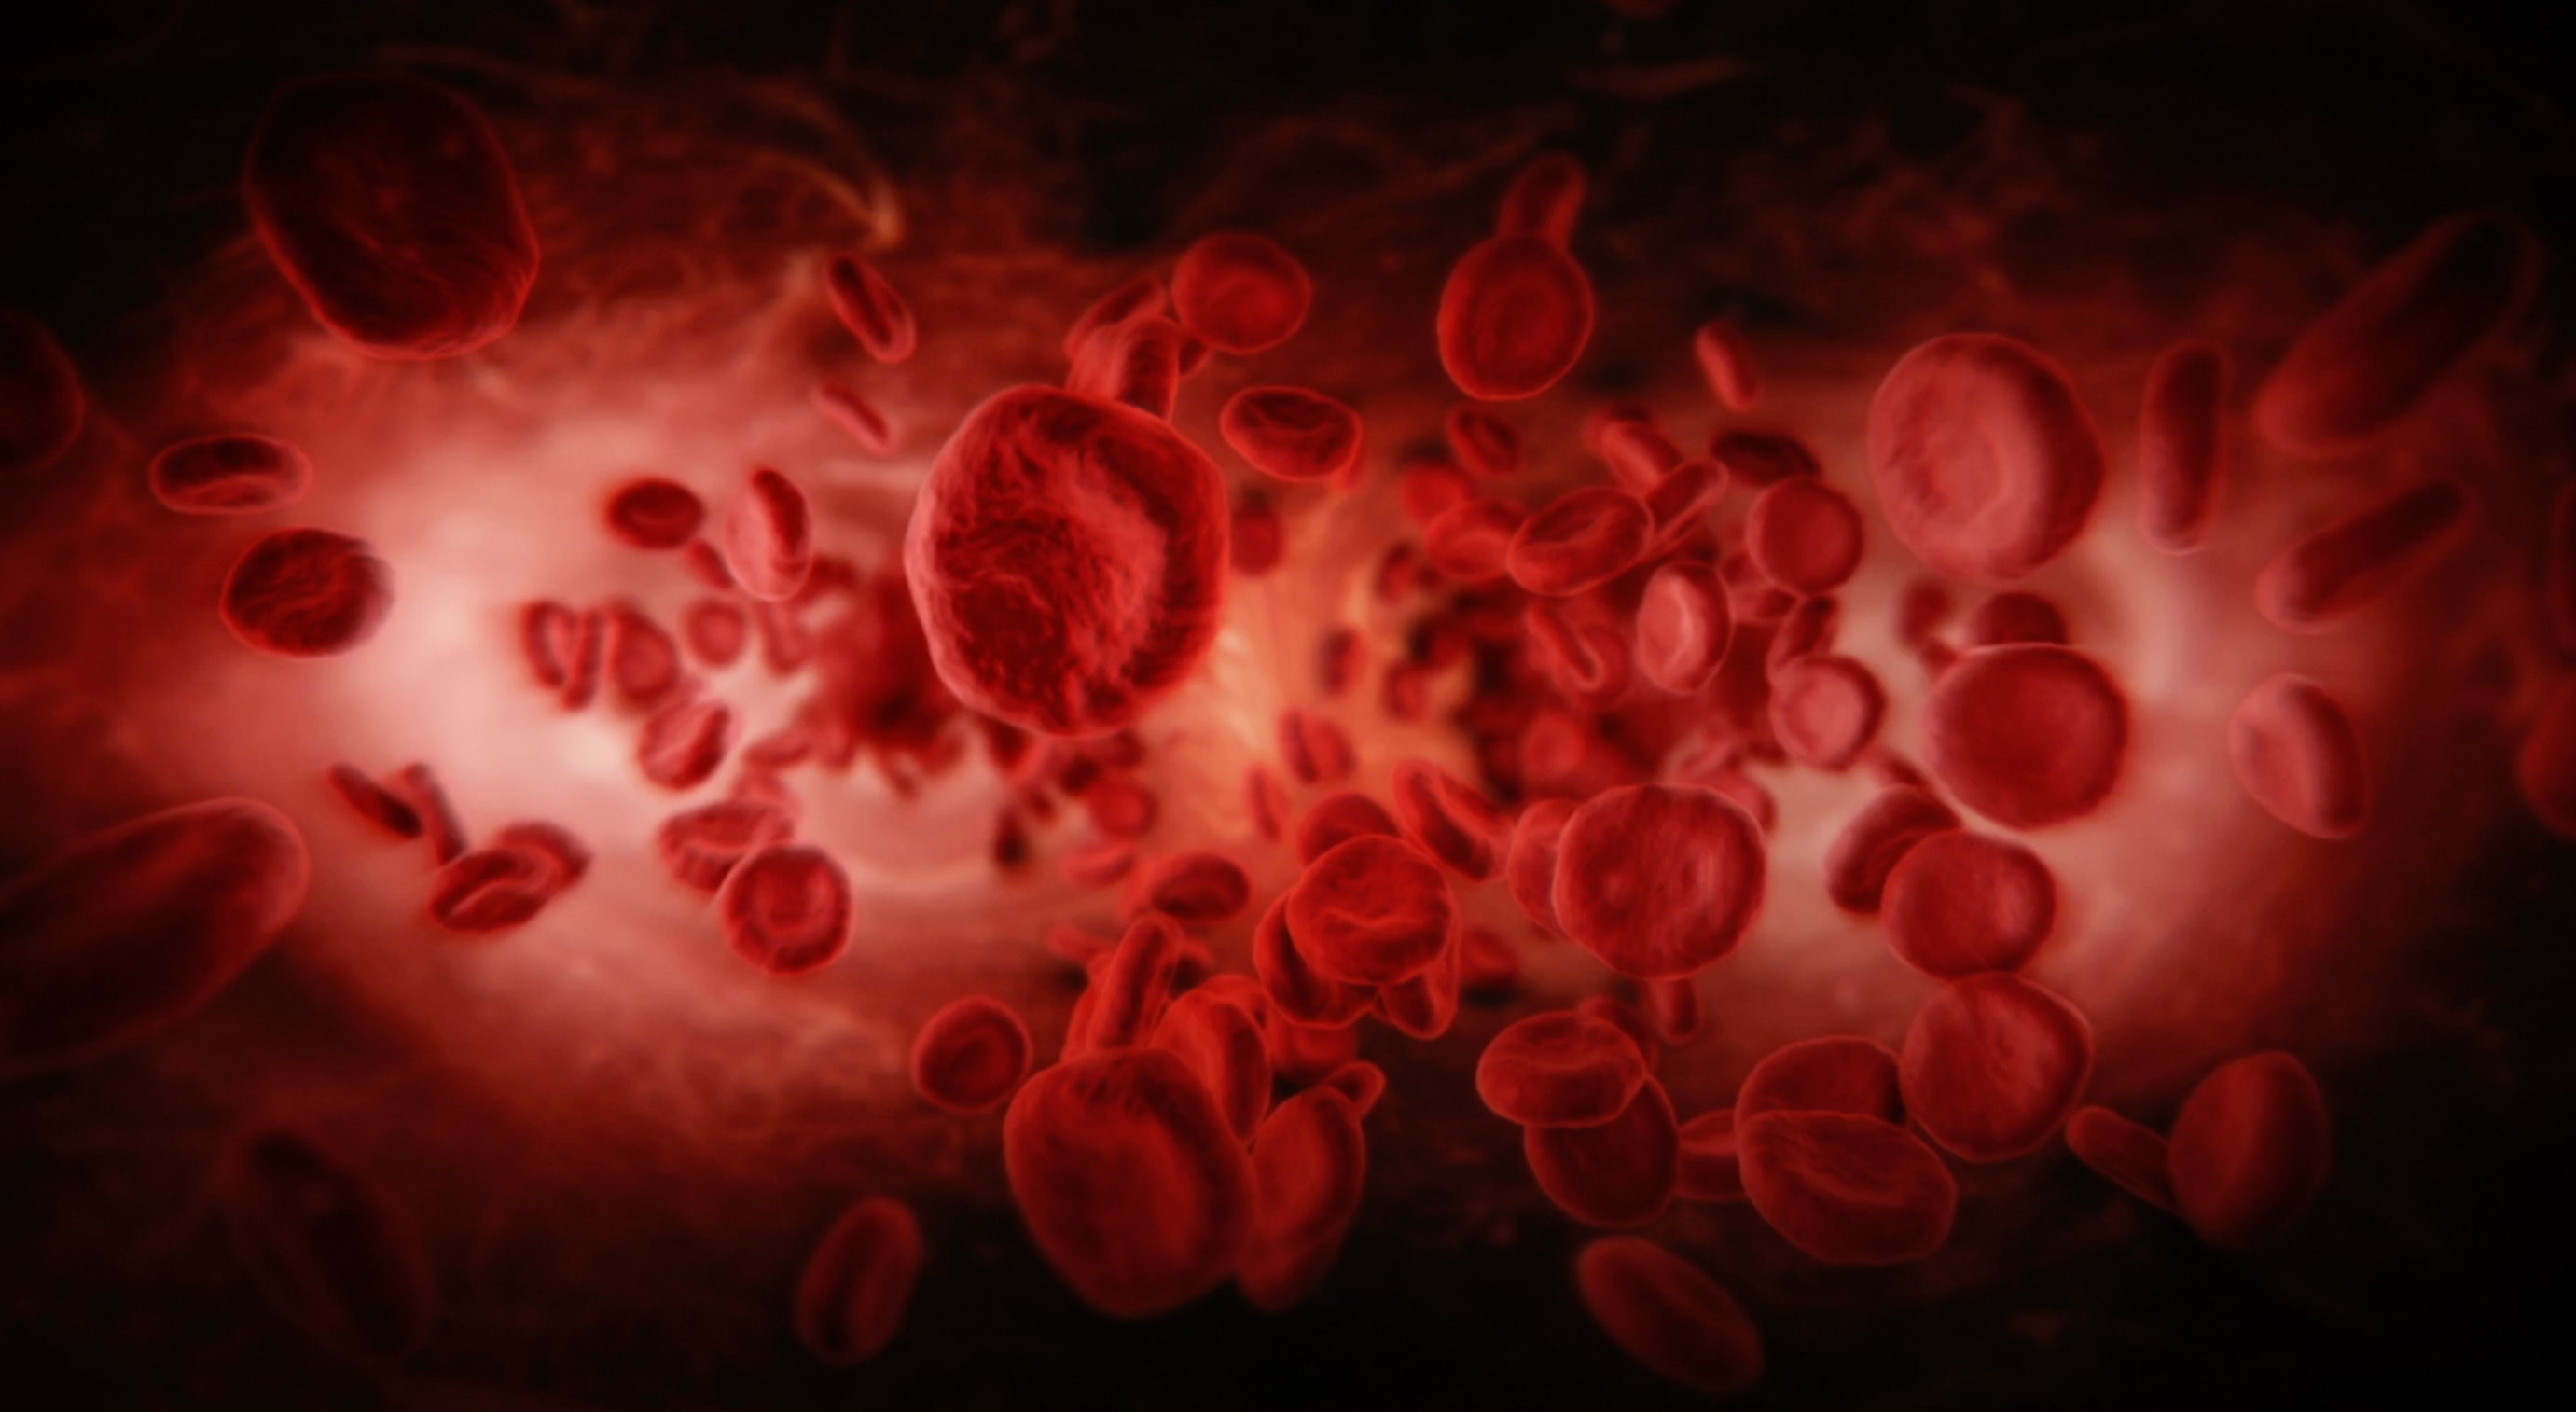 Imagen estática del video mostrando un acercamiento de glóbulos sanguíneos